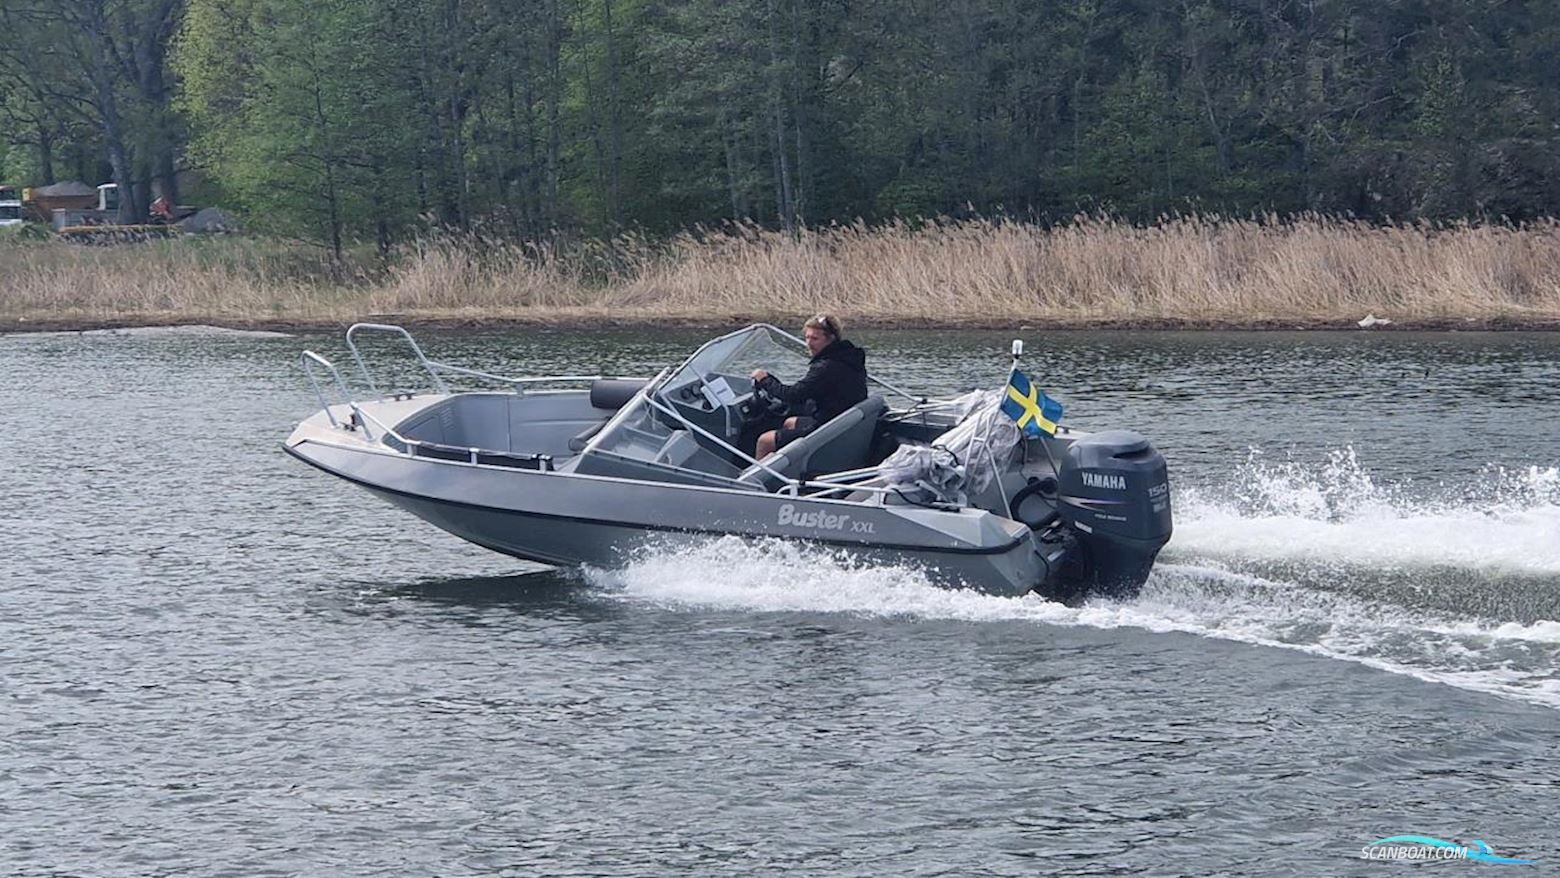 Buster Xxl Motorbåt 2007, med Yamaha motor, Sverige